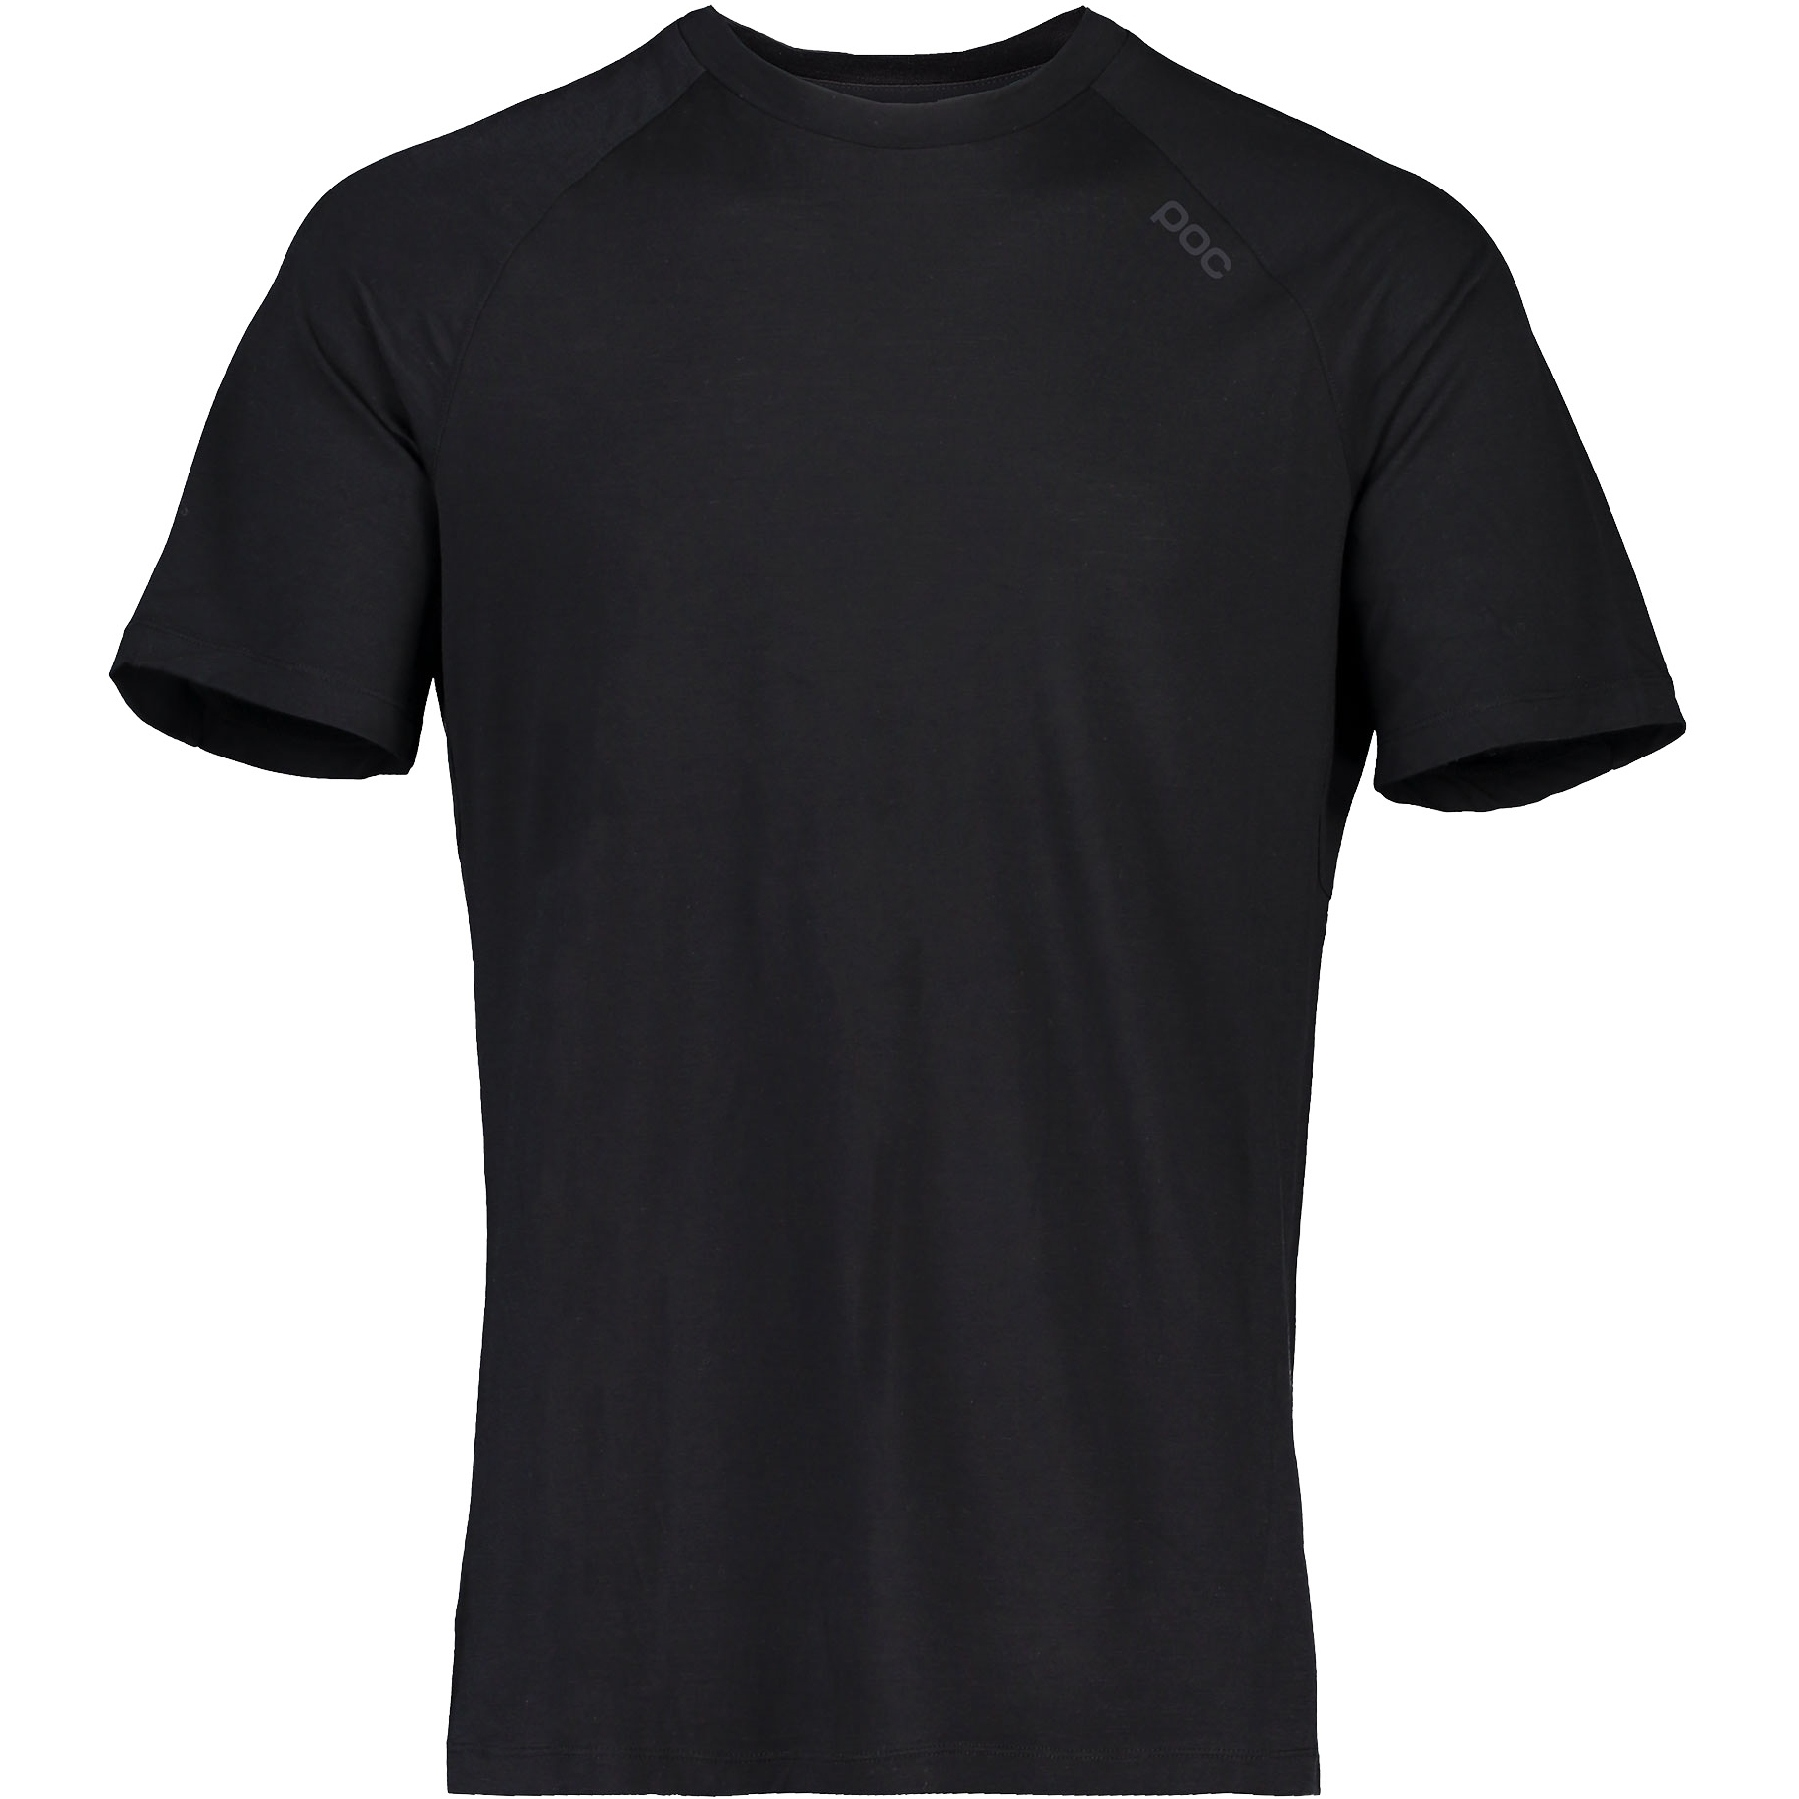 Produktbild von POC Light Merino T-Shirt Herren - 1002 Uranium Black